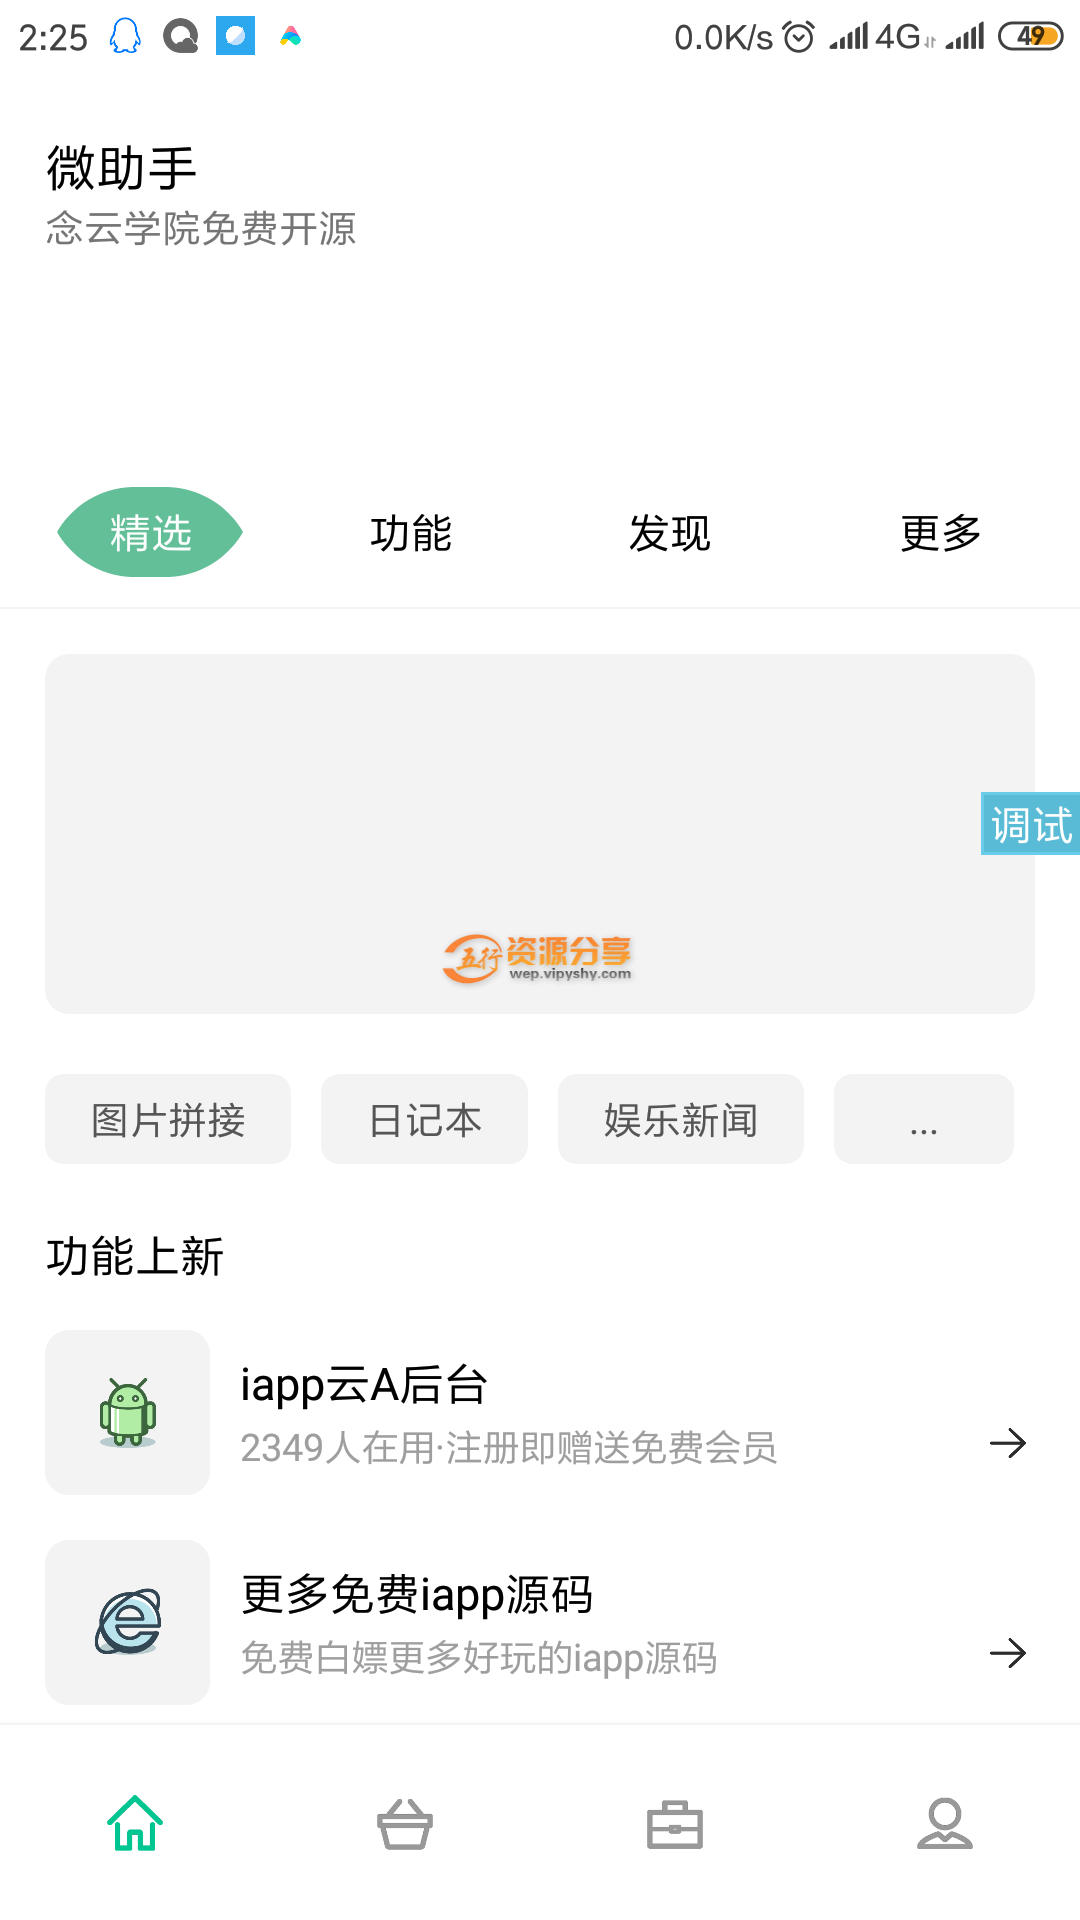 iApp微助手UI源码免费分享-相关图片介绍